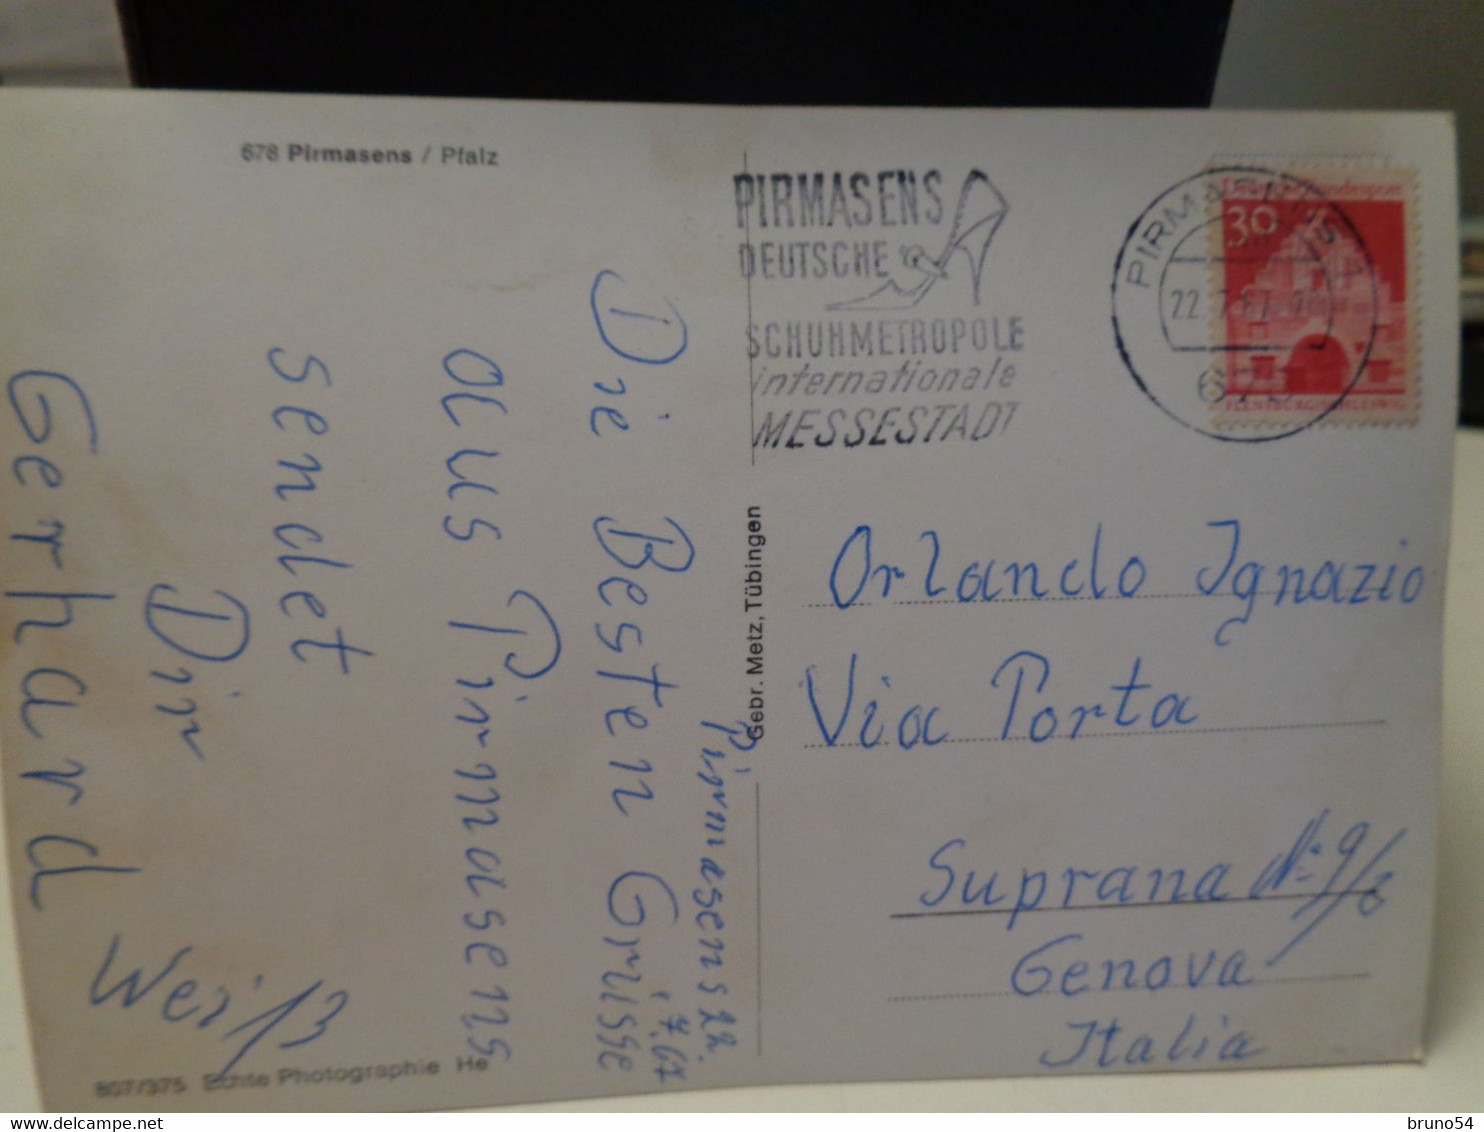 17 Postkarten Pirmasens Alle reisen mit Briefmarken